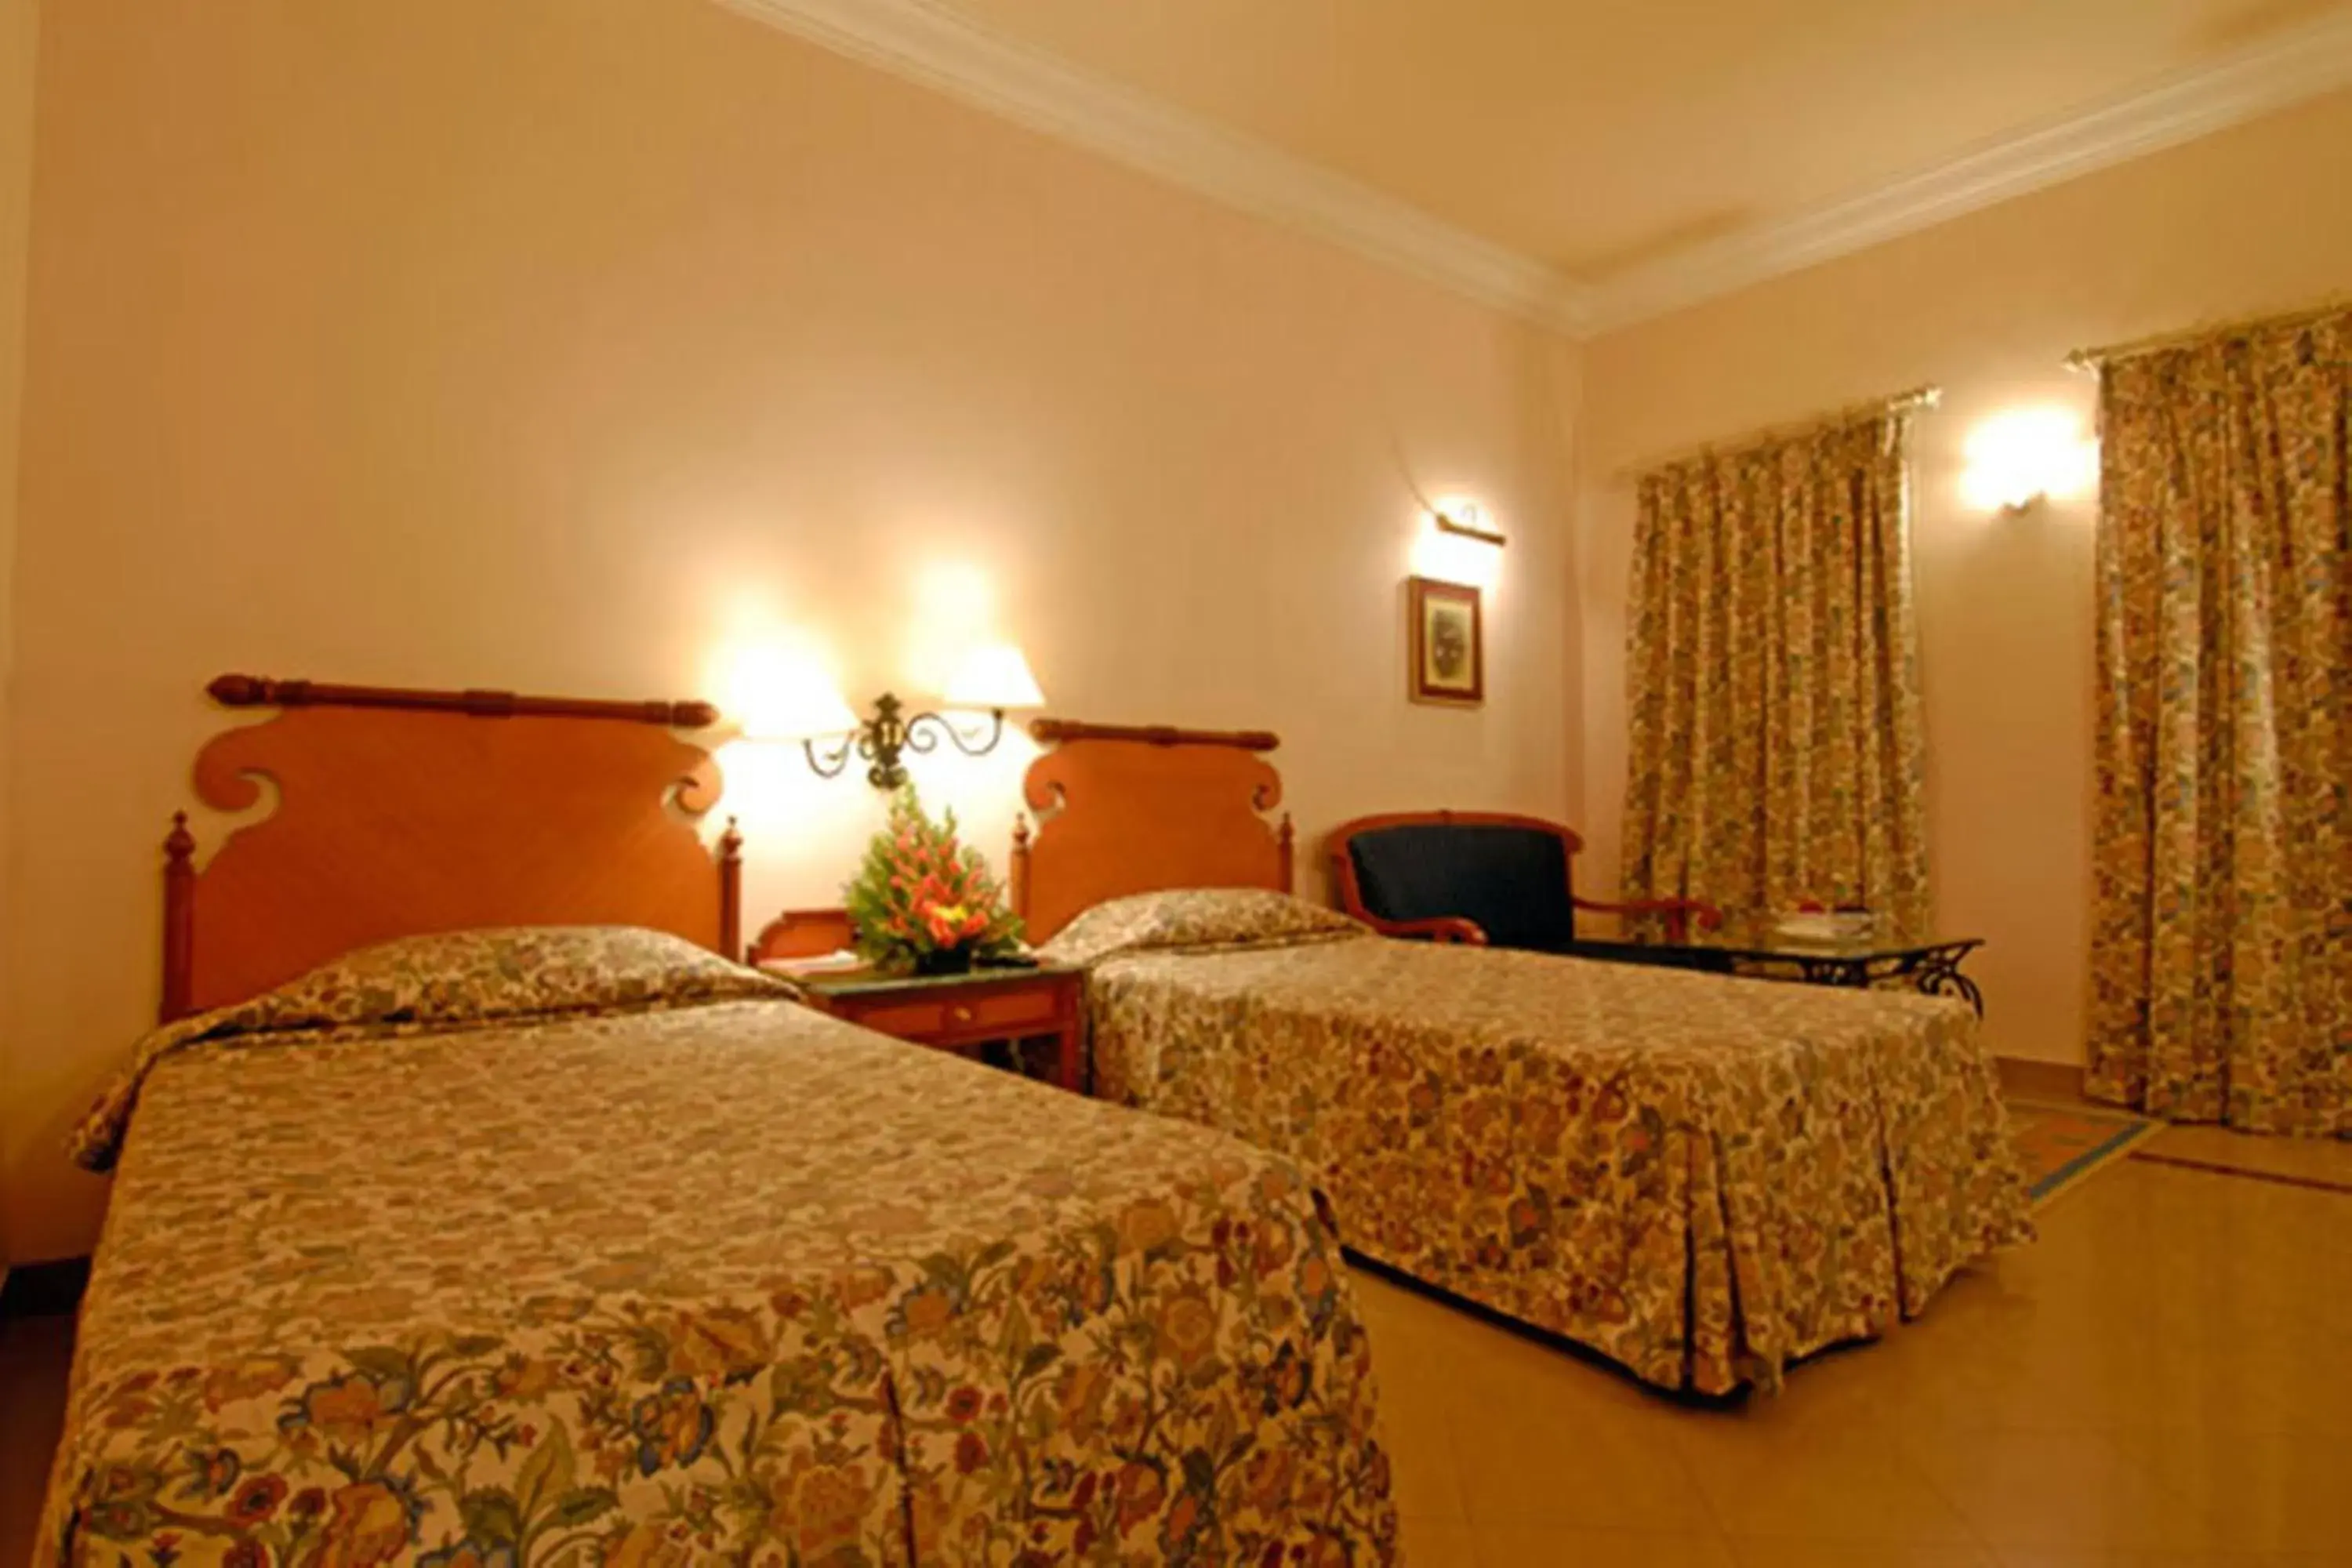 Bedroom, Bed in Ktdc Tea County Resort